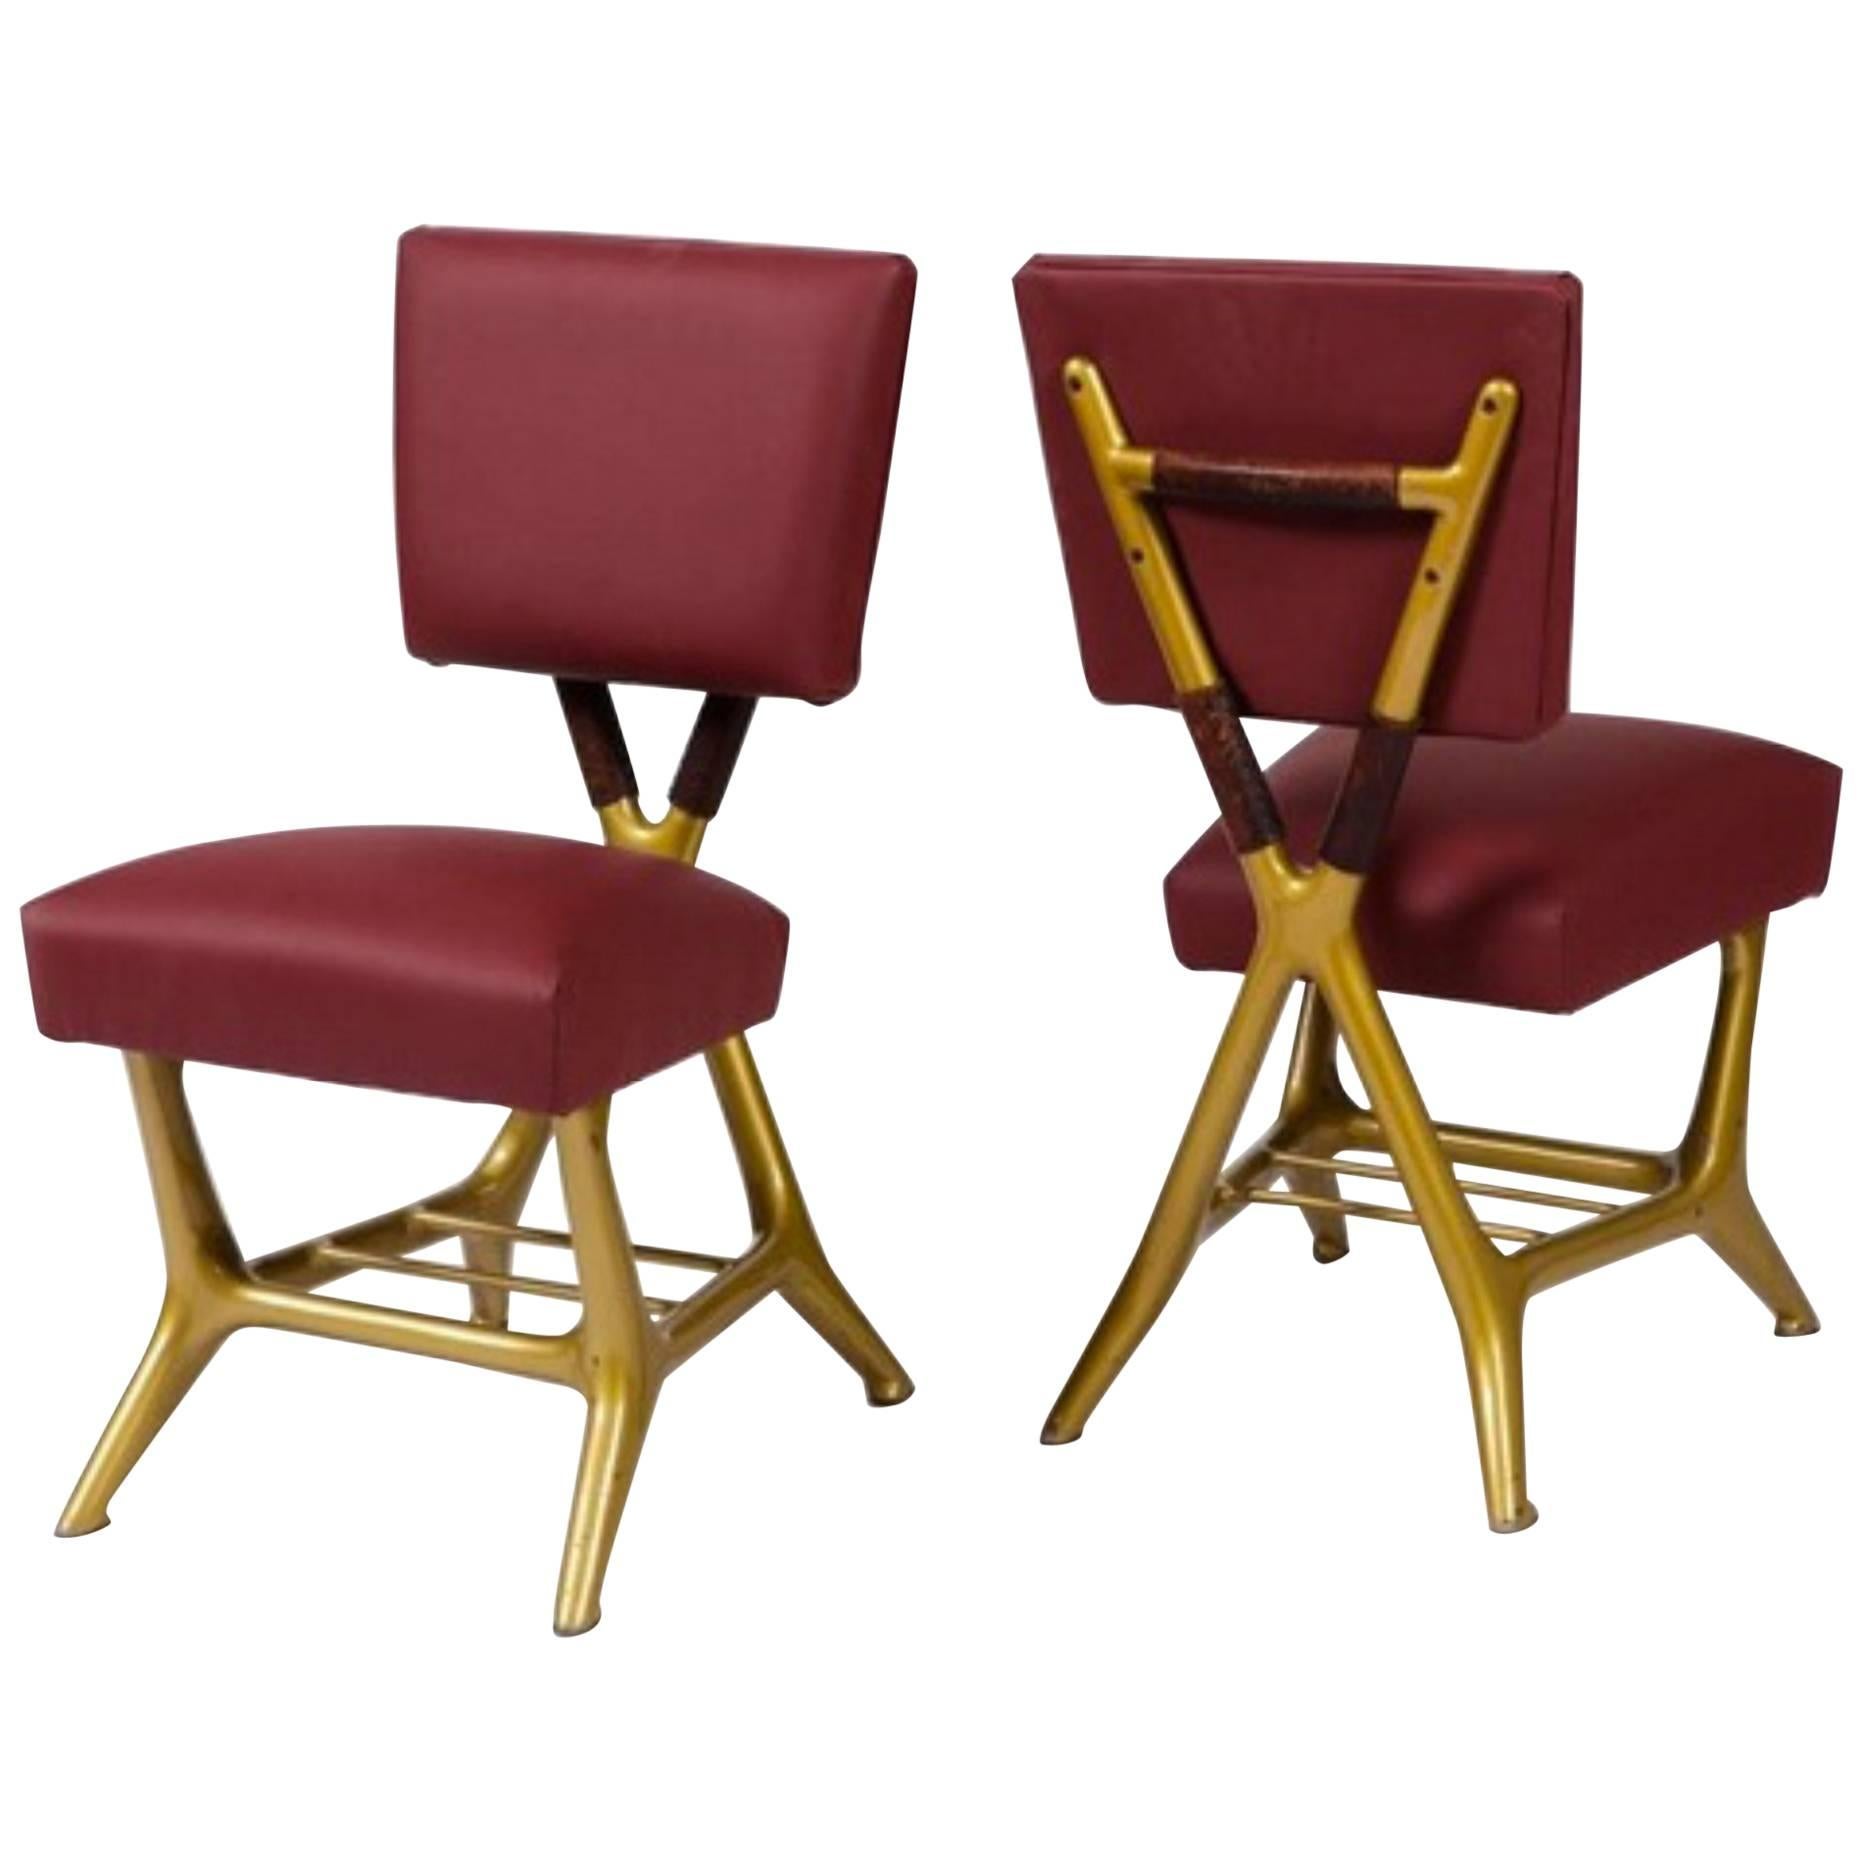 Pair of Chair by Gio Ponti & Giulio Minoletti, Italy, circa 1953